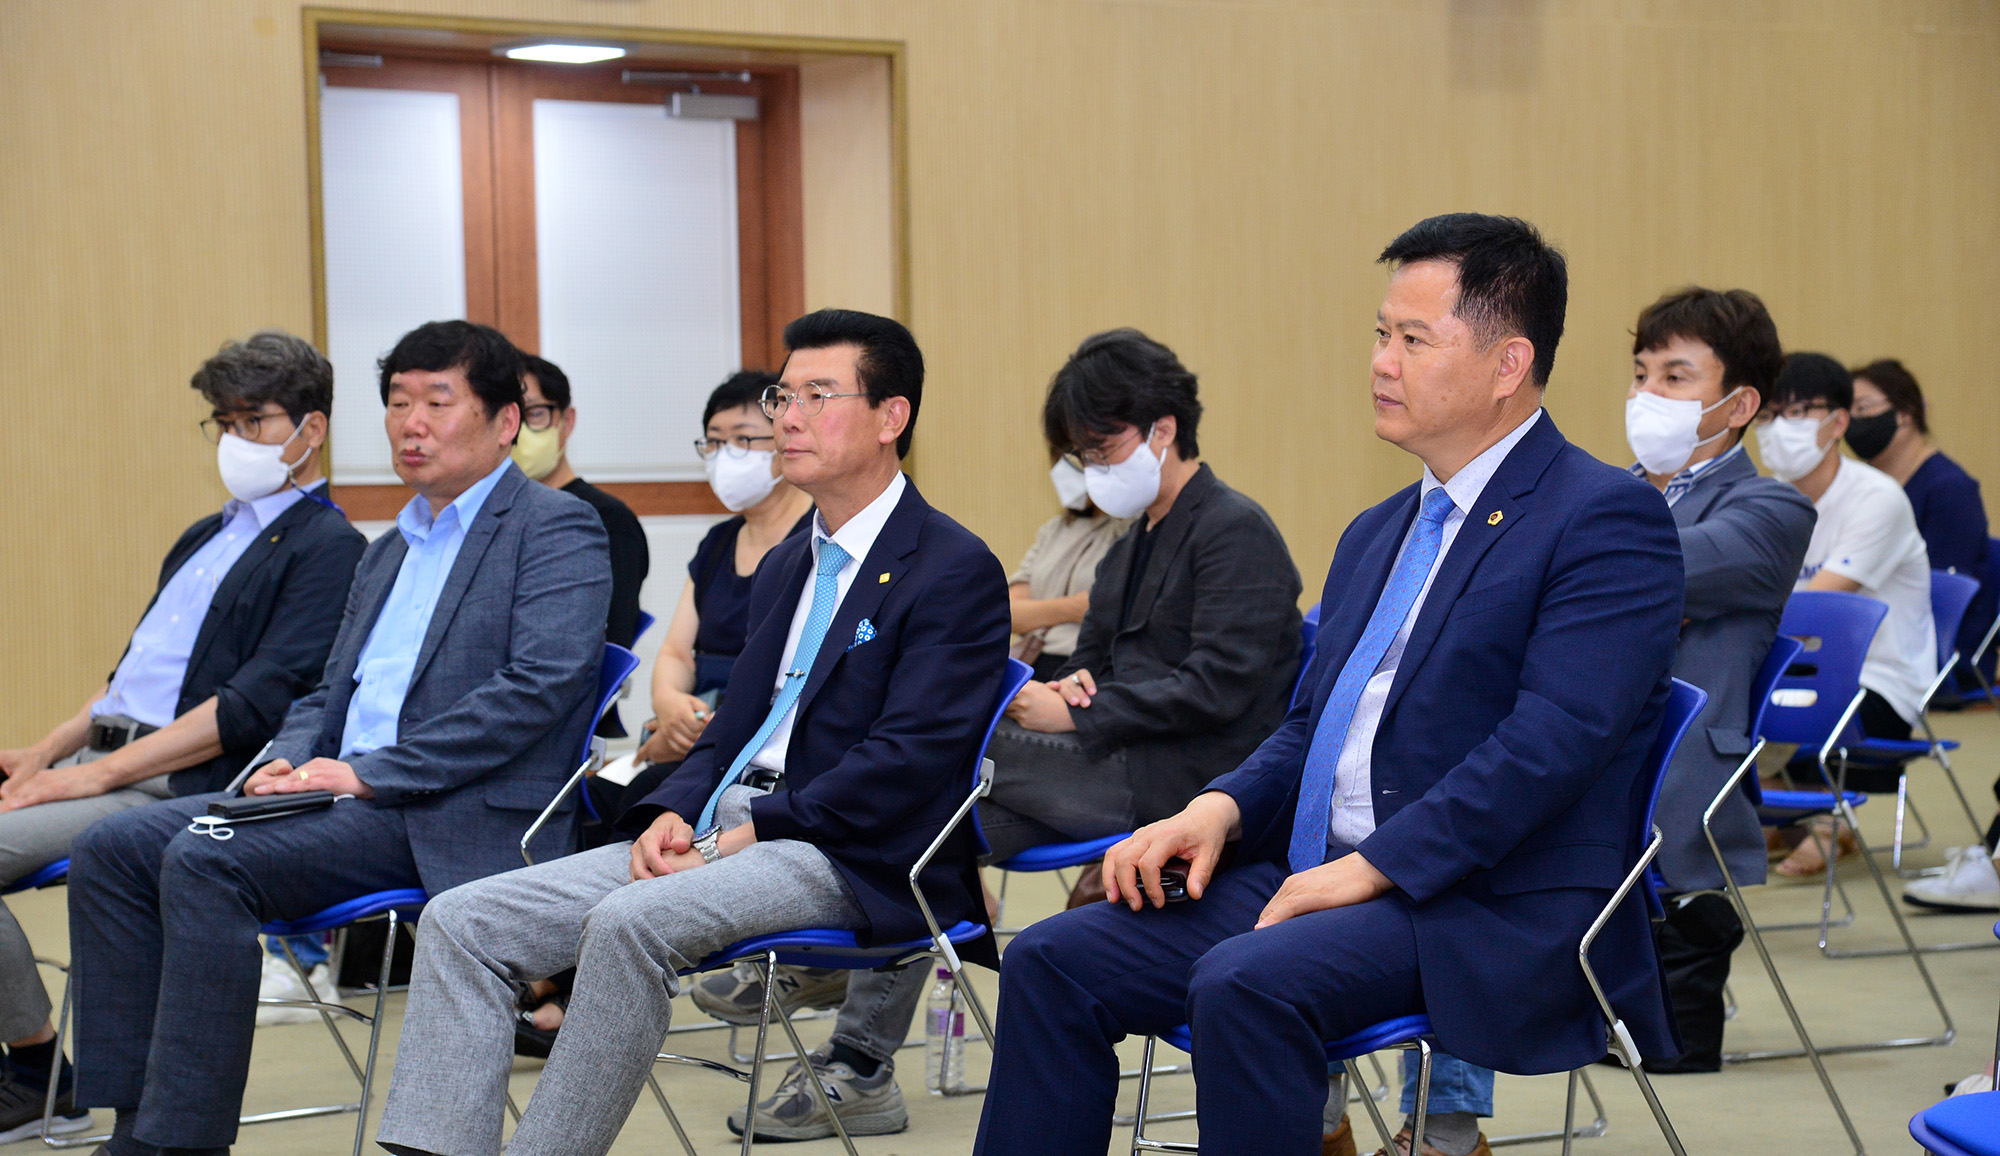 박병석 의장, ‘21세기 울산의 가치’ 세미나 개최6